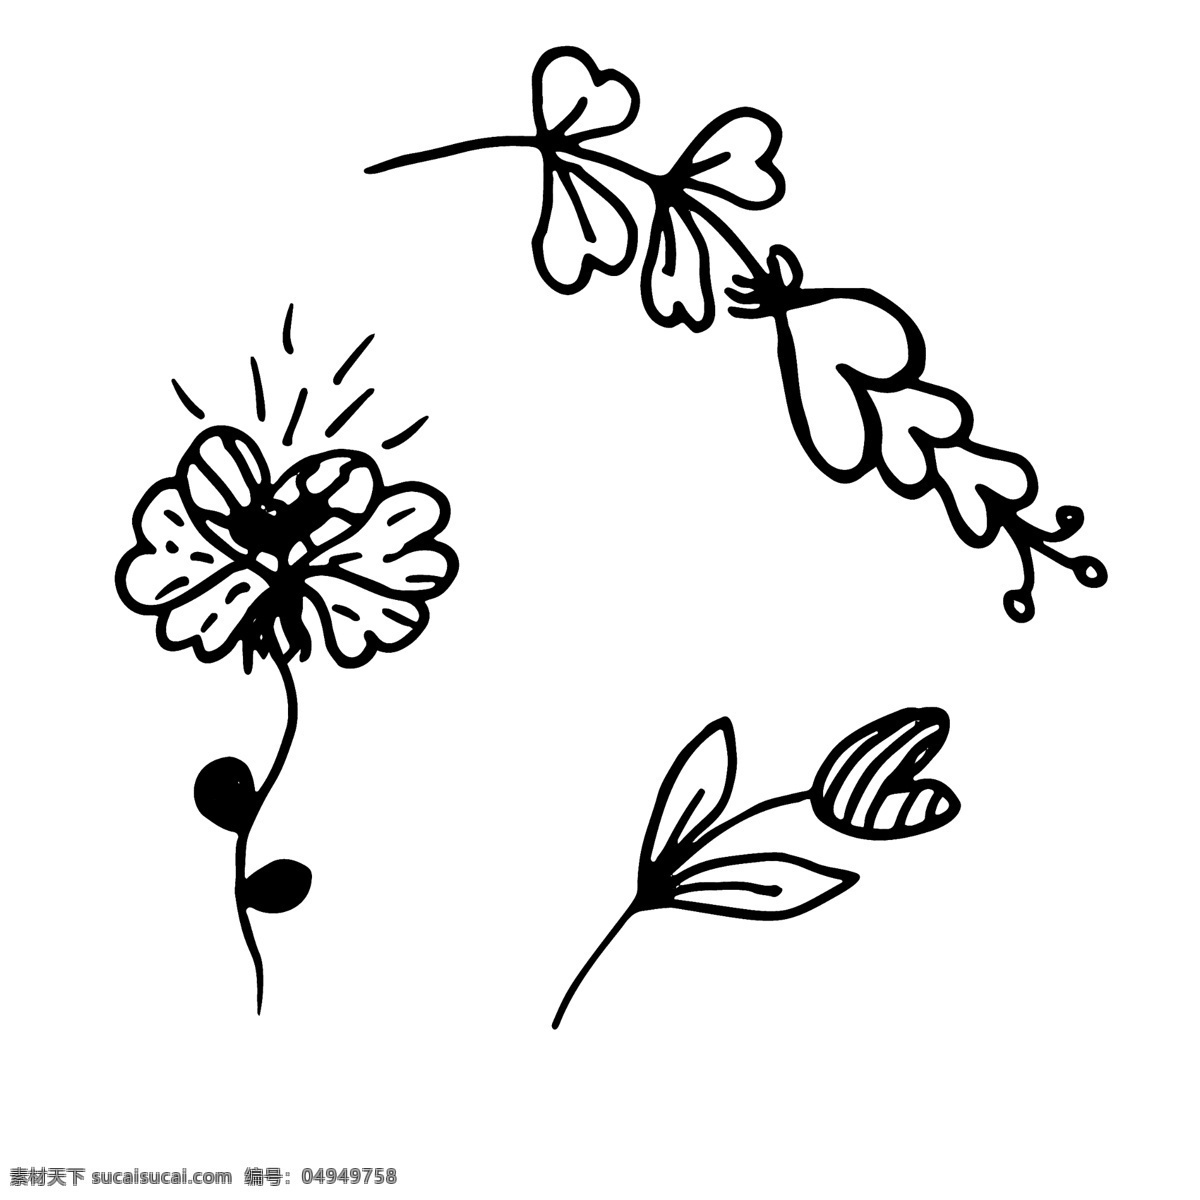 花朵 卡通 手绘 植物 文件